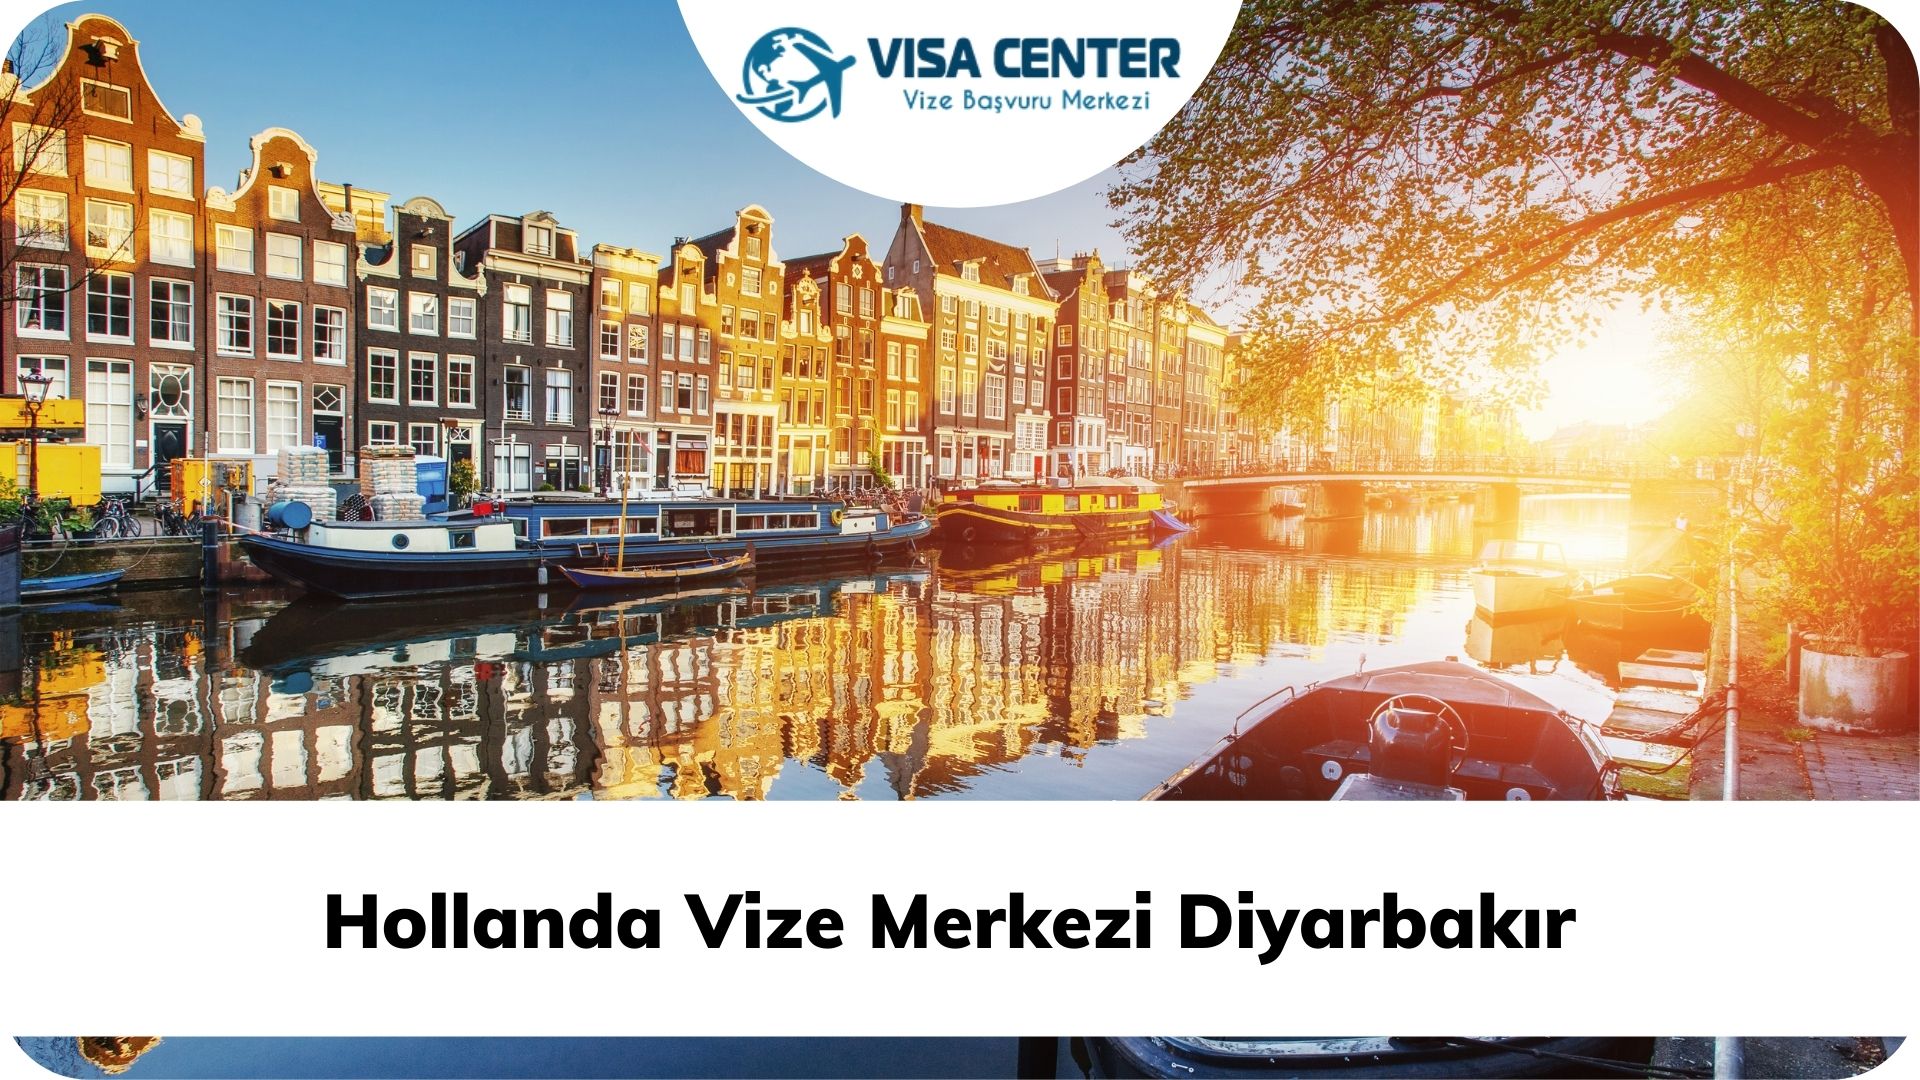 Hollanda Vize Merkezi Diyarbakır  